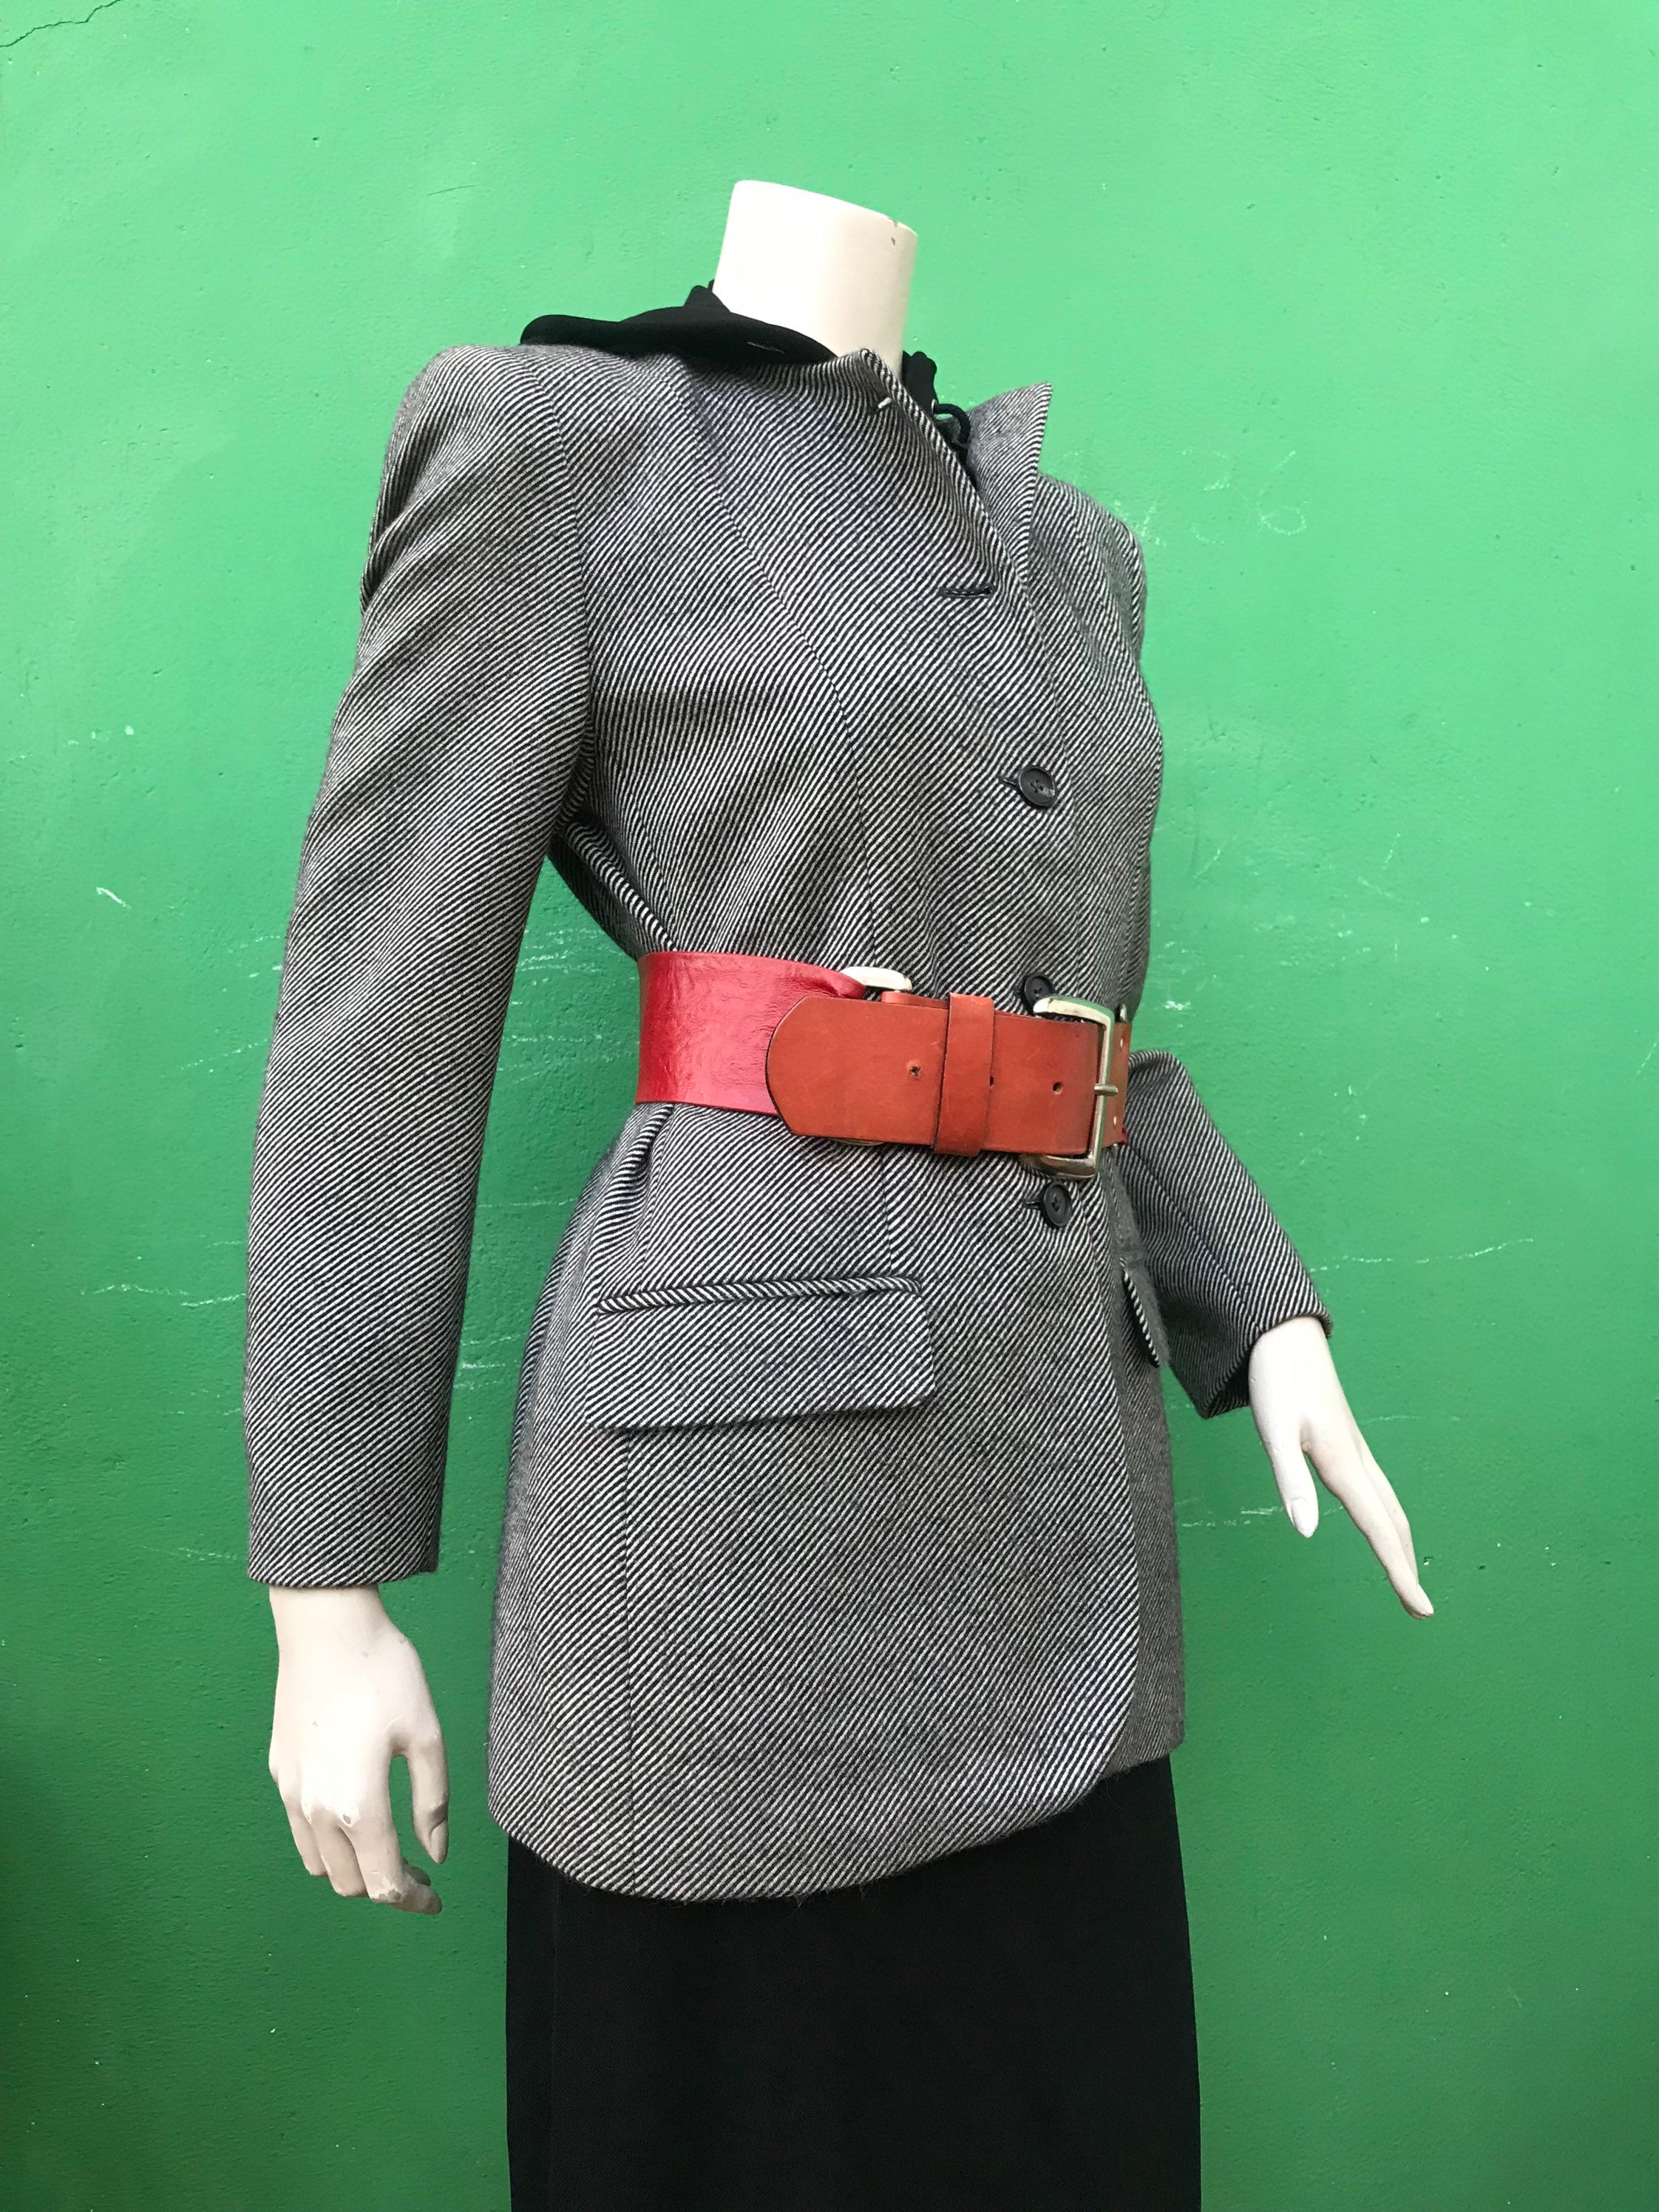 Vintage Salvatore Ferragamo Tan Jacket & Mini Skirt Suit Outfit with Belt